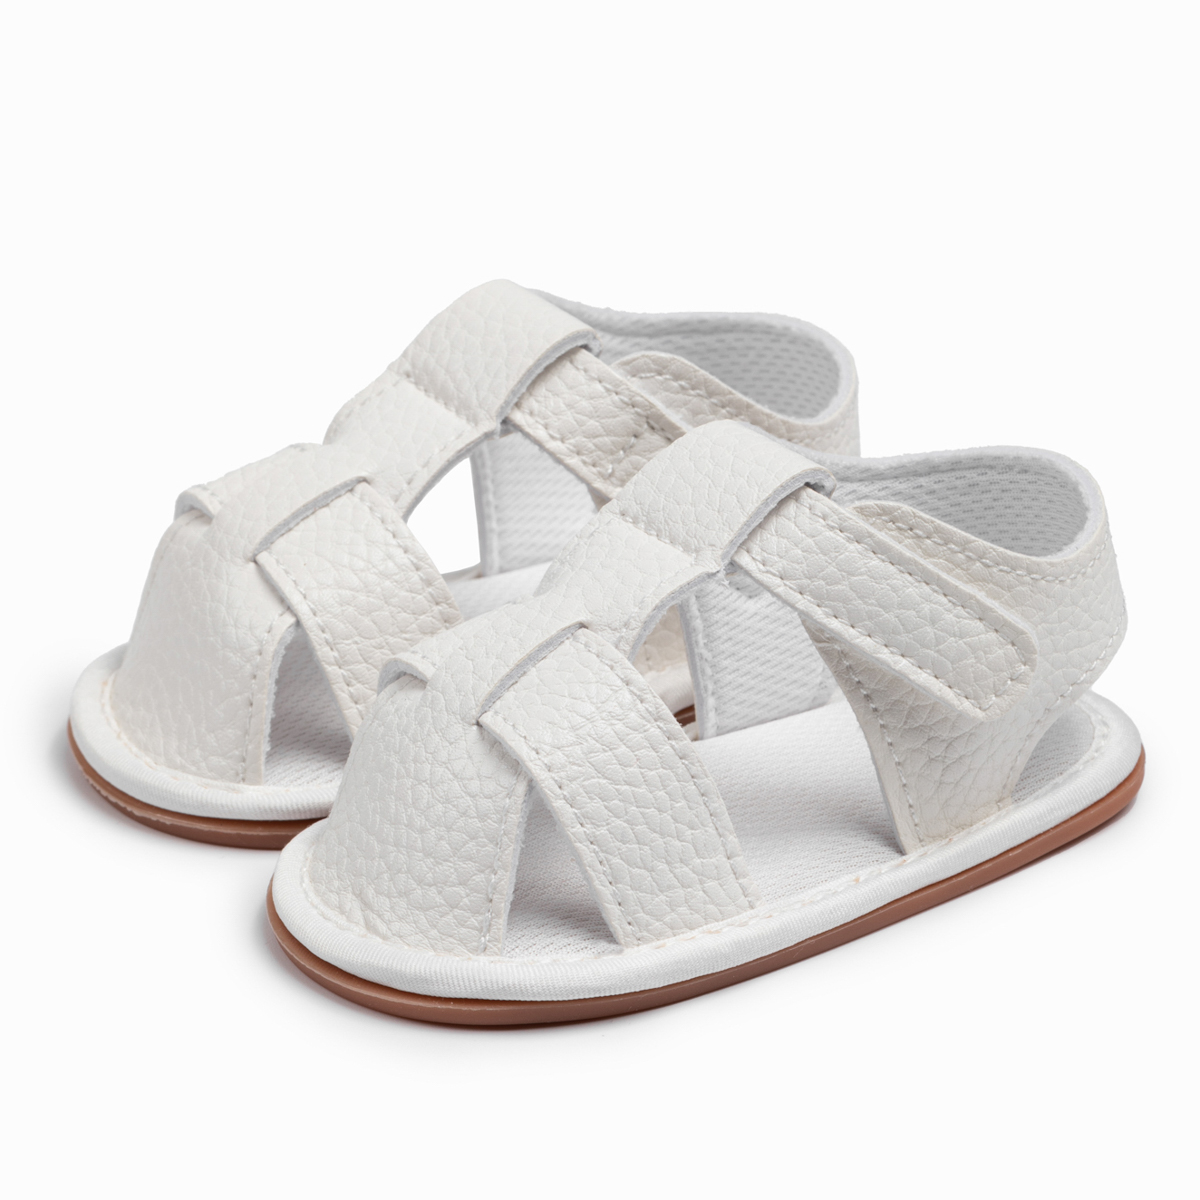 PU Upper Anti-Slip Unisex Summer Baby Sandals